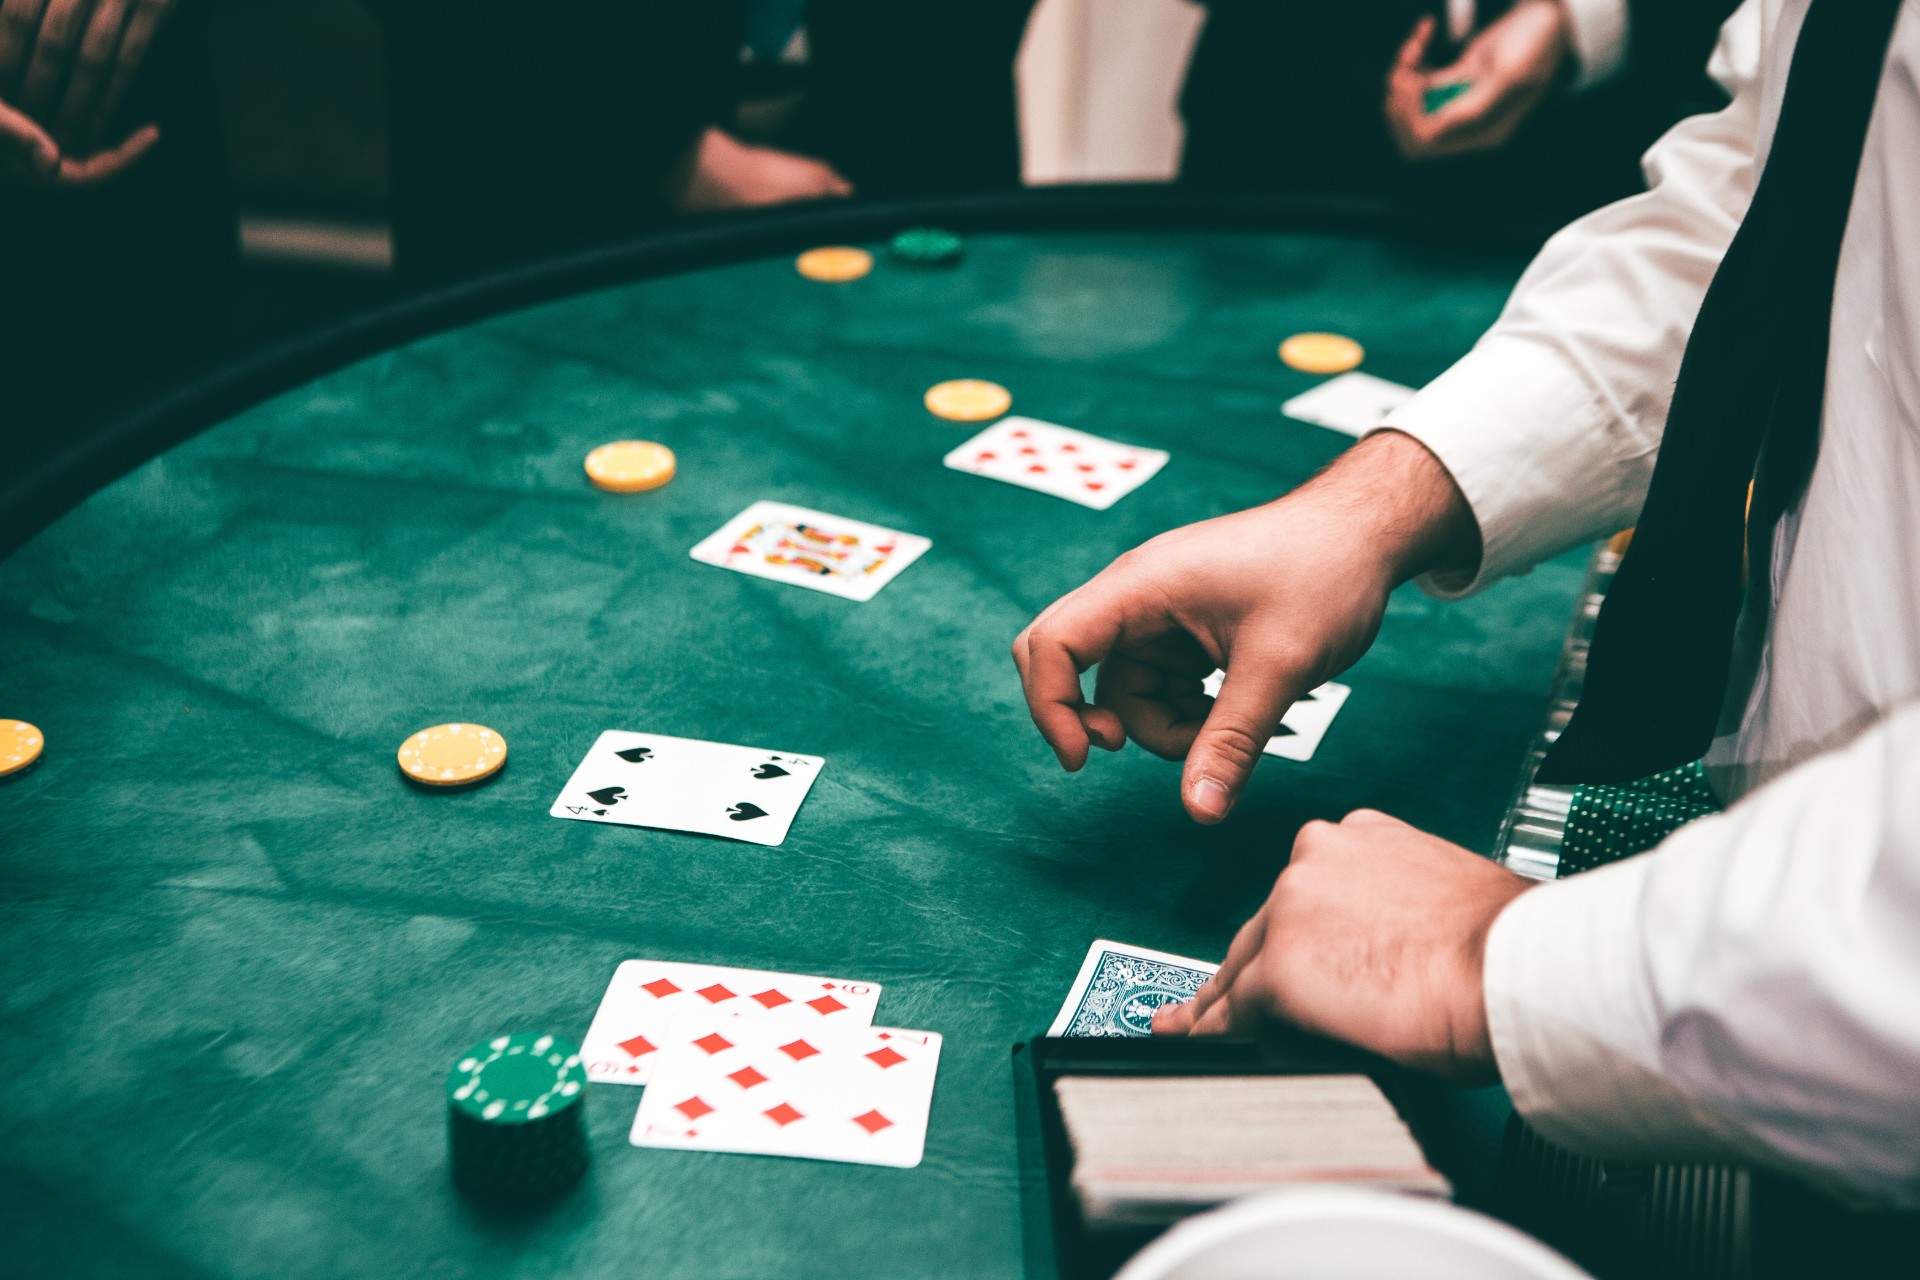 A dealer deals the poker cards an a table